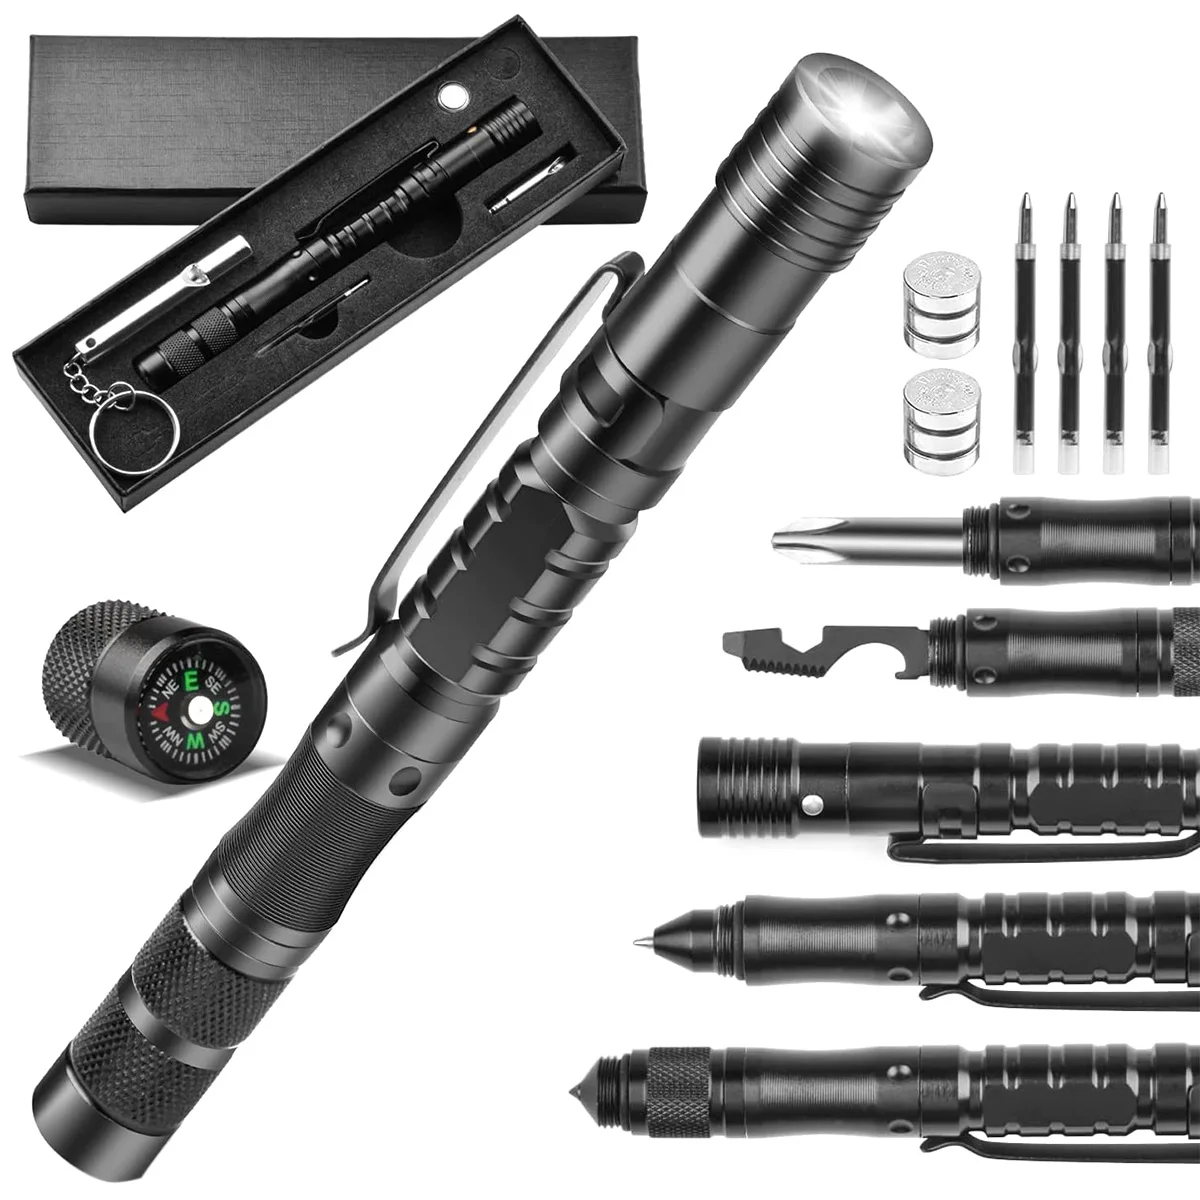 

Multi Tool Pen Portable Multitool Ballpoint Pen W/ LED Flashlight Glass Breaker Bottle Opener Whistle Wrench Survival Gear Tool